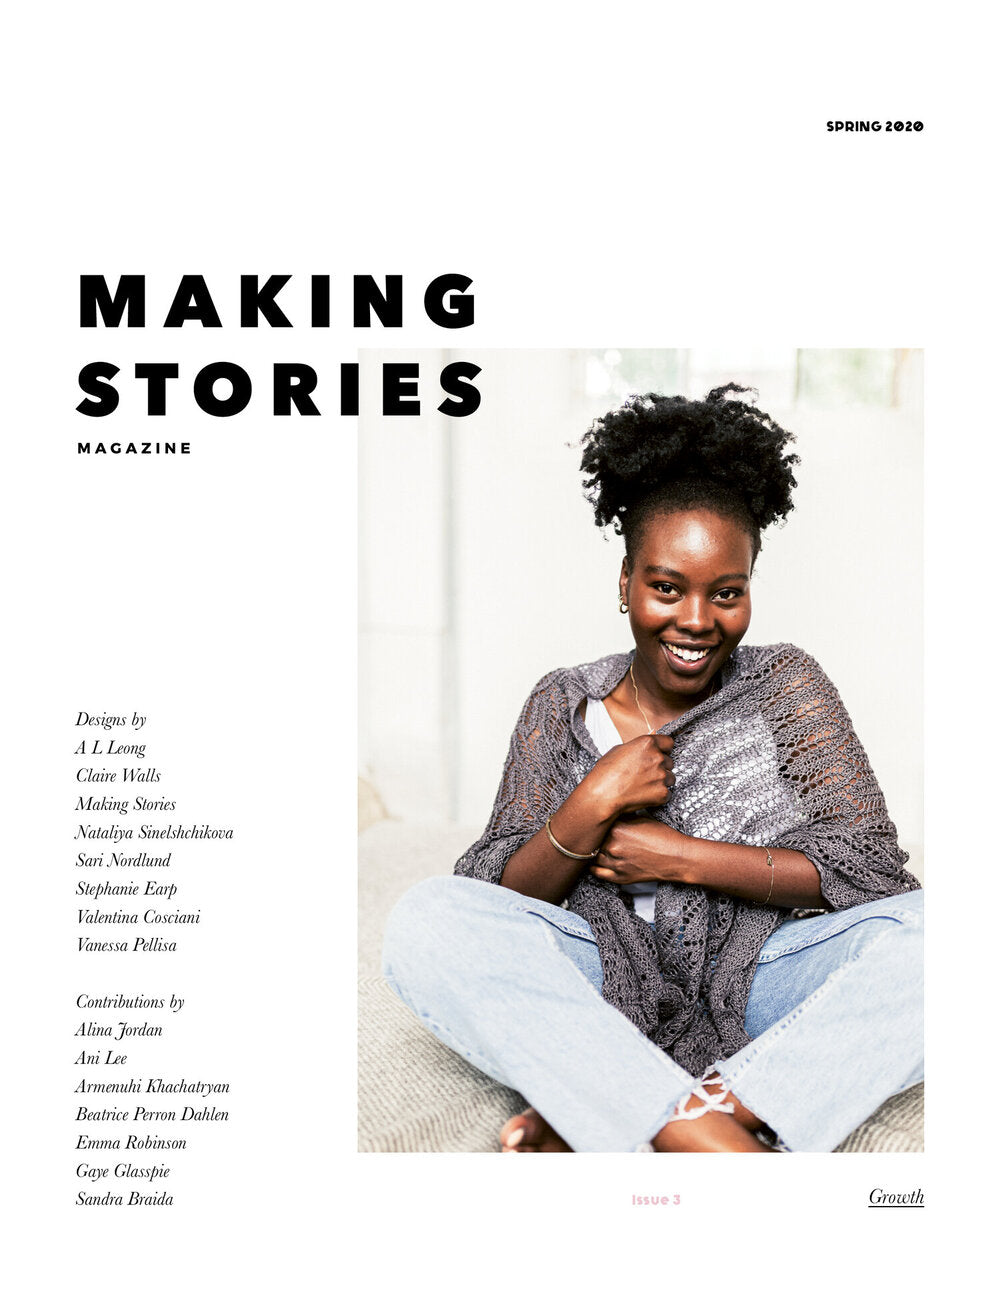 Making stories magazine